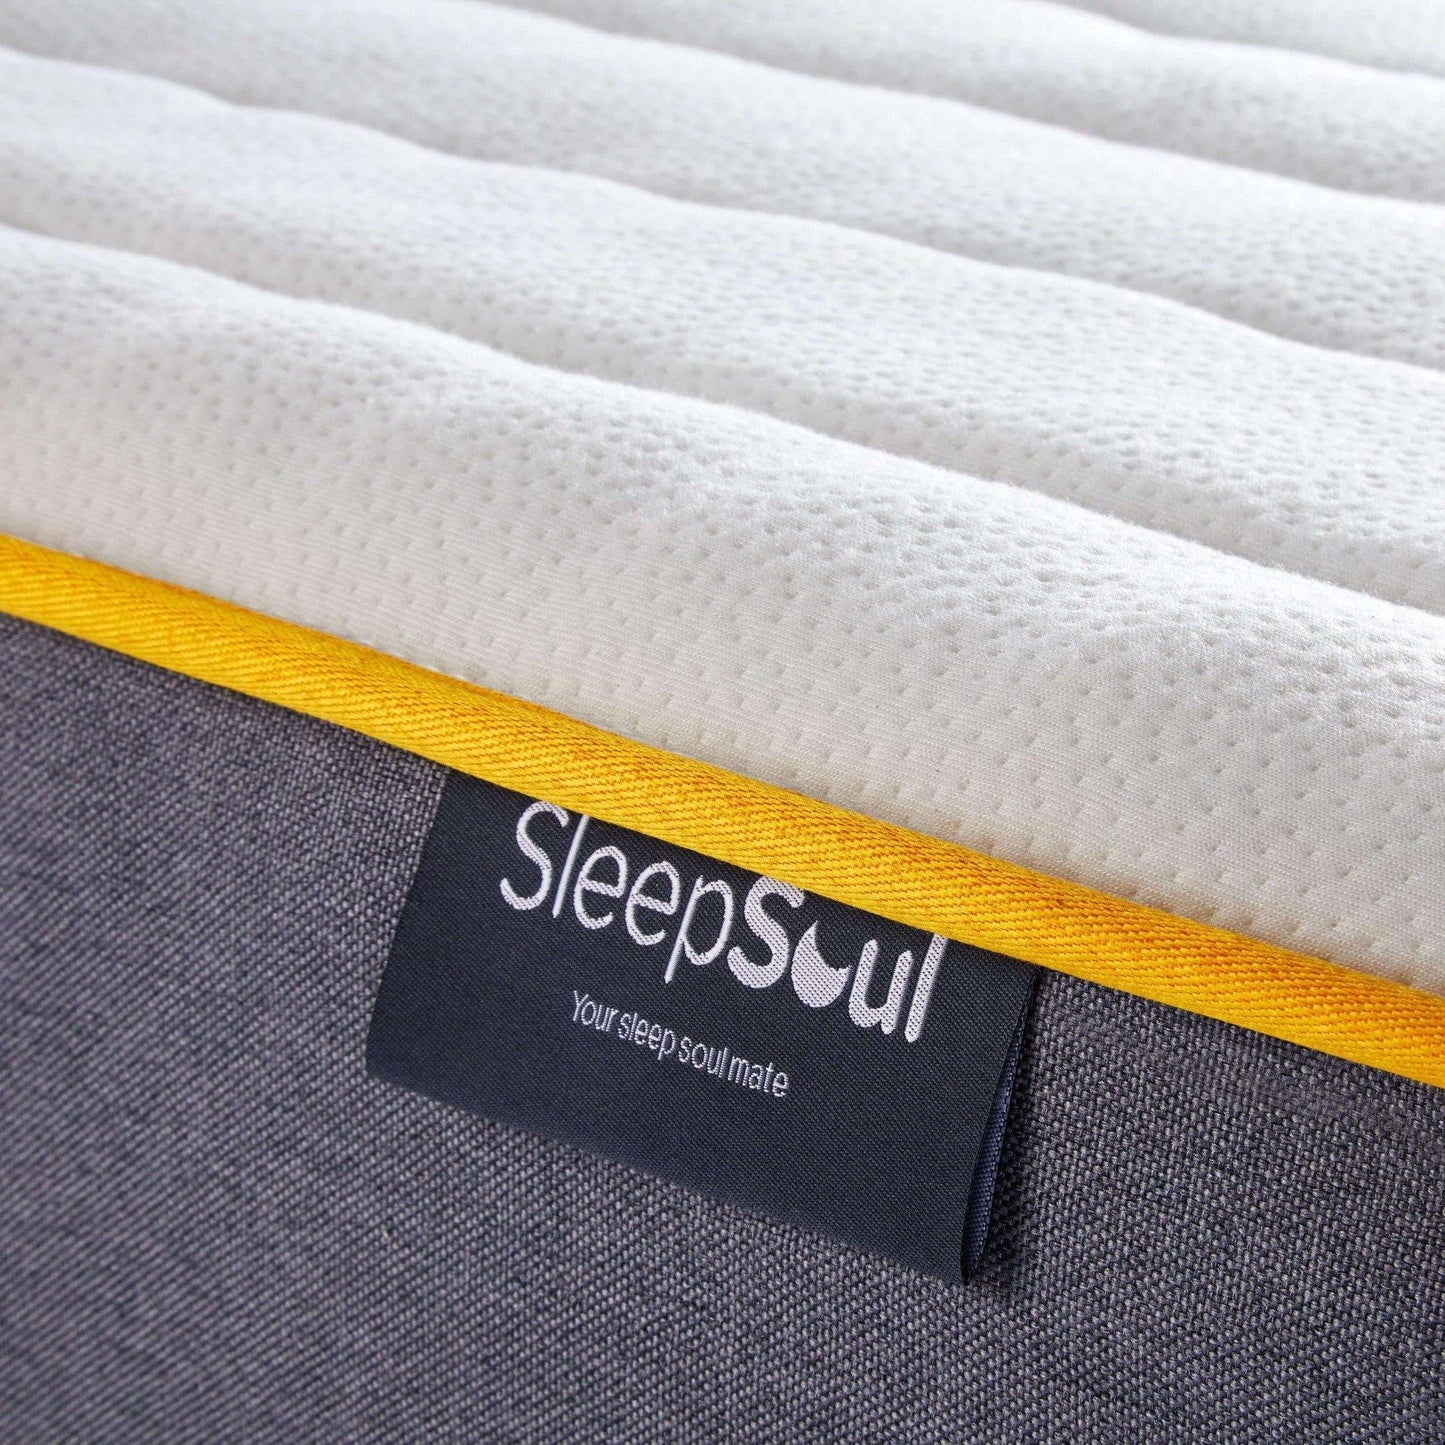 SleepSoul comfort 800 pocket spring label